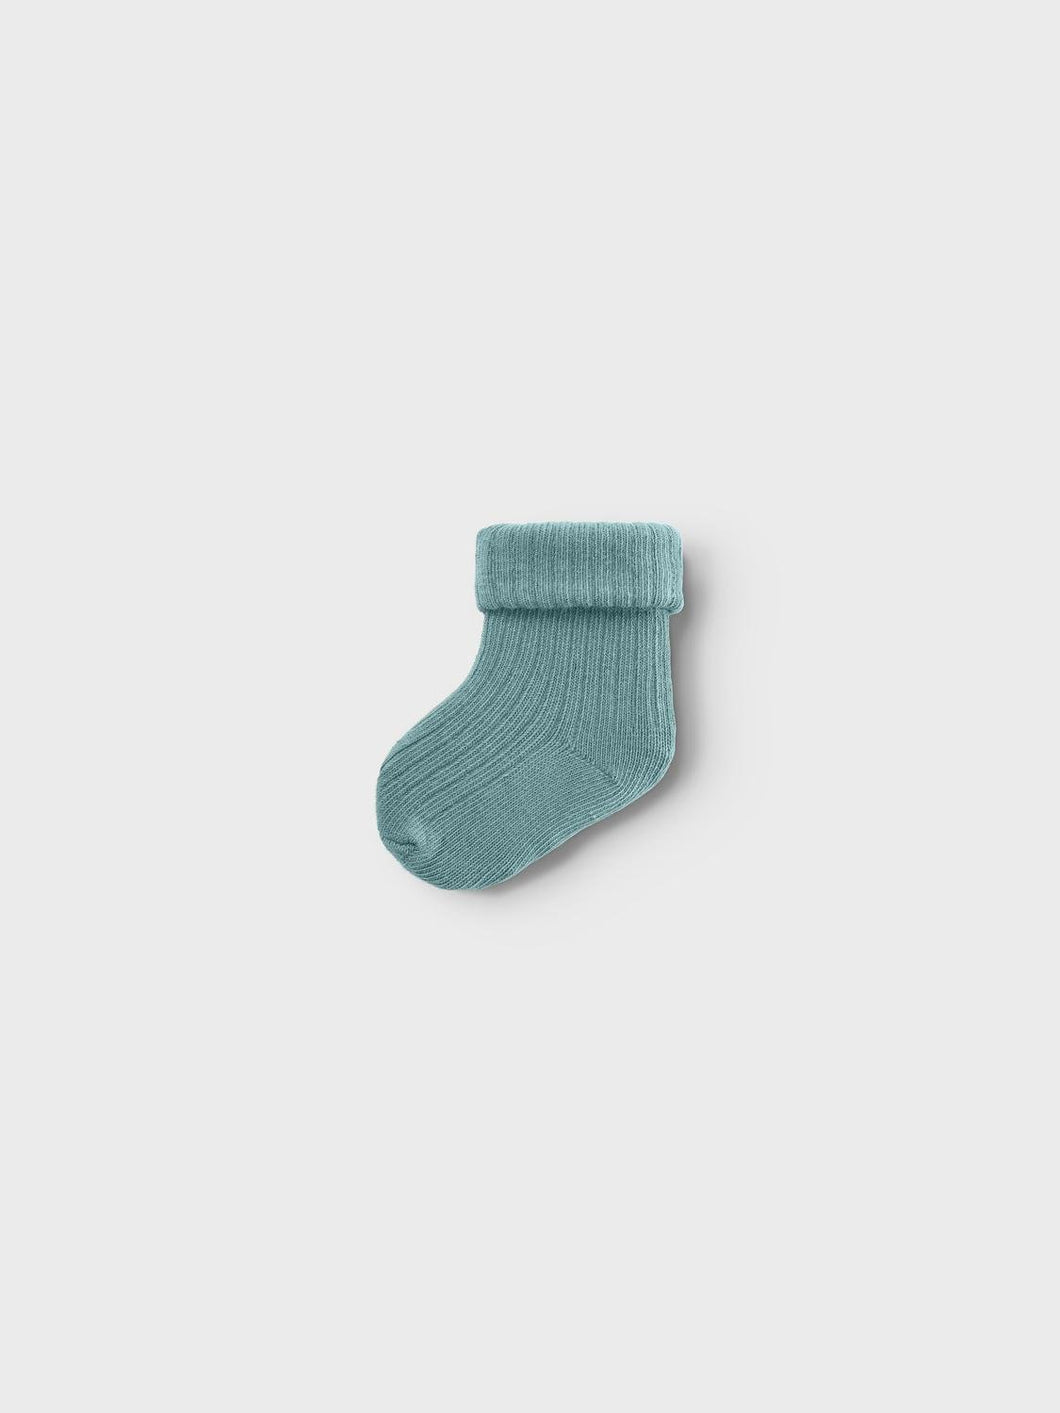 NBMNOBBU Socks - Mineral Blue